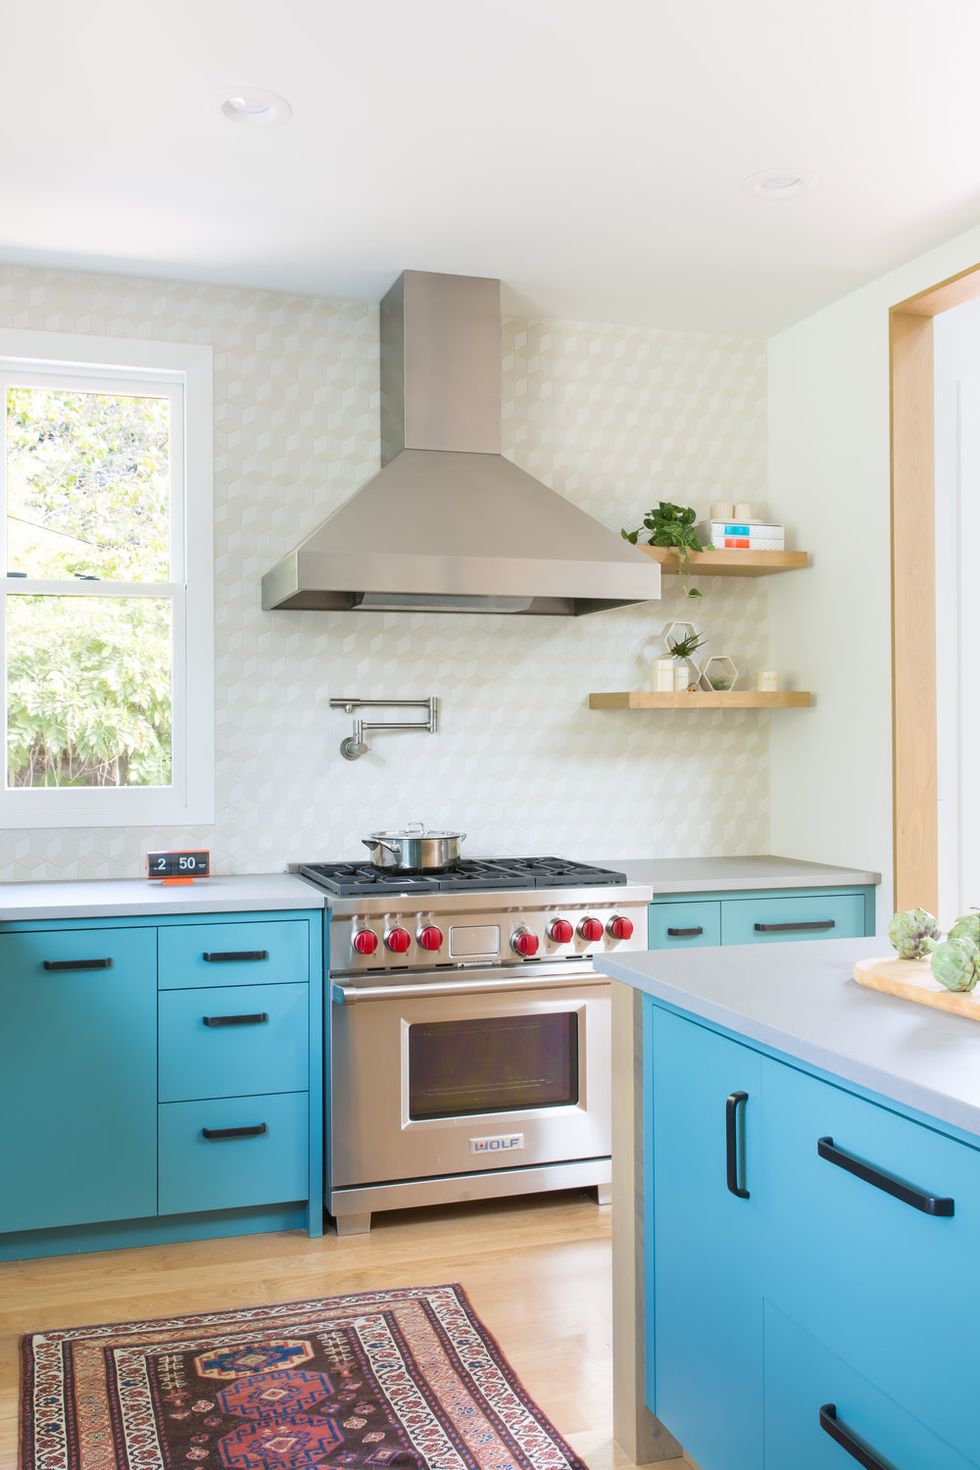 hình ảnh phòng bếp hiện đại với tủ dưới sơn màu xanh da trời bắt mắt